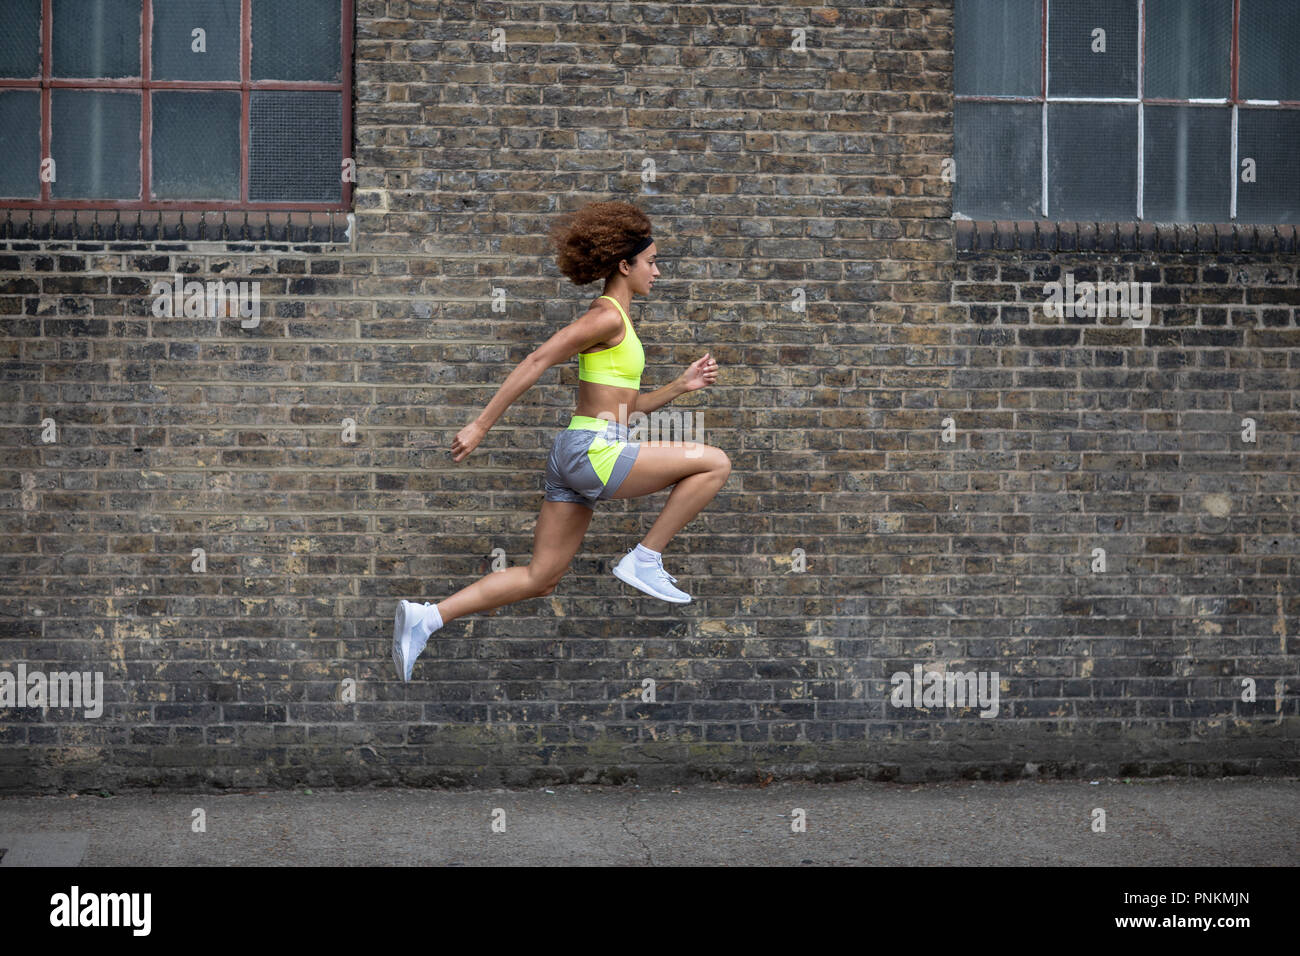 Junge erwachsene Frau sprang in die Luft mit Mauer Hintergrund Stockfoto